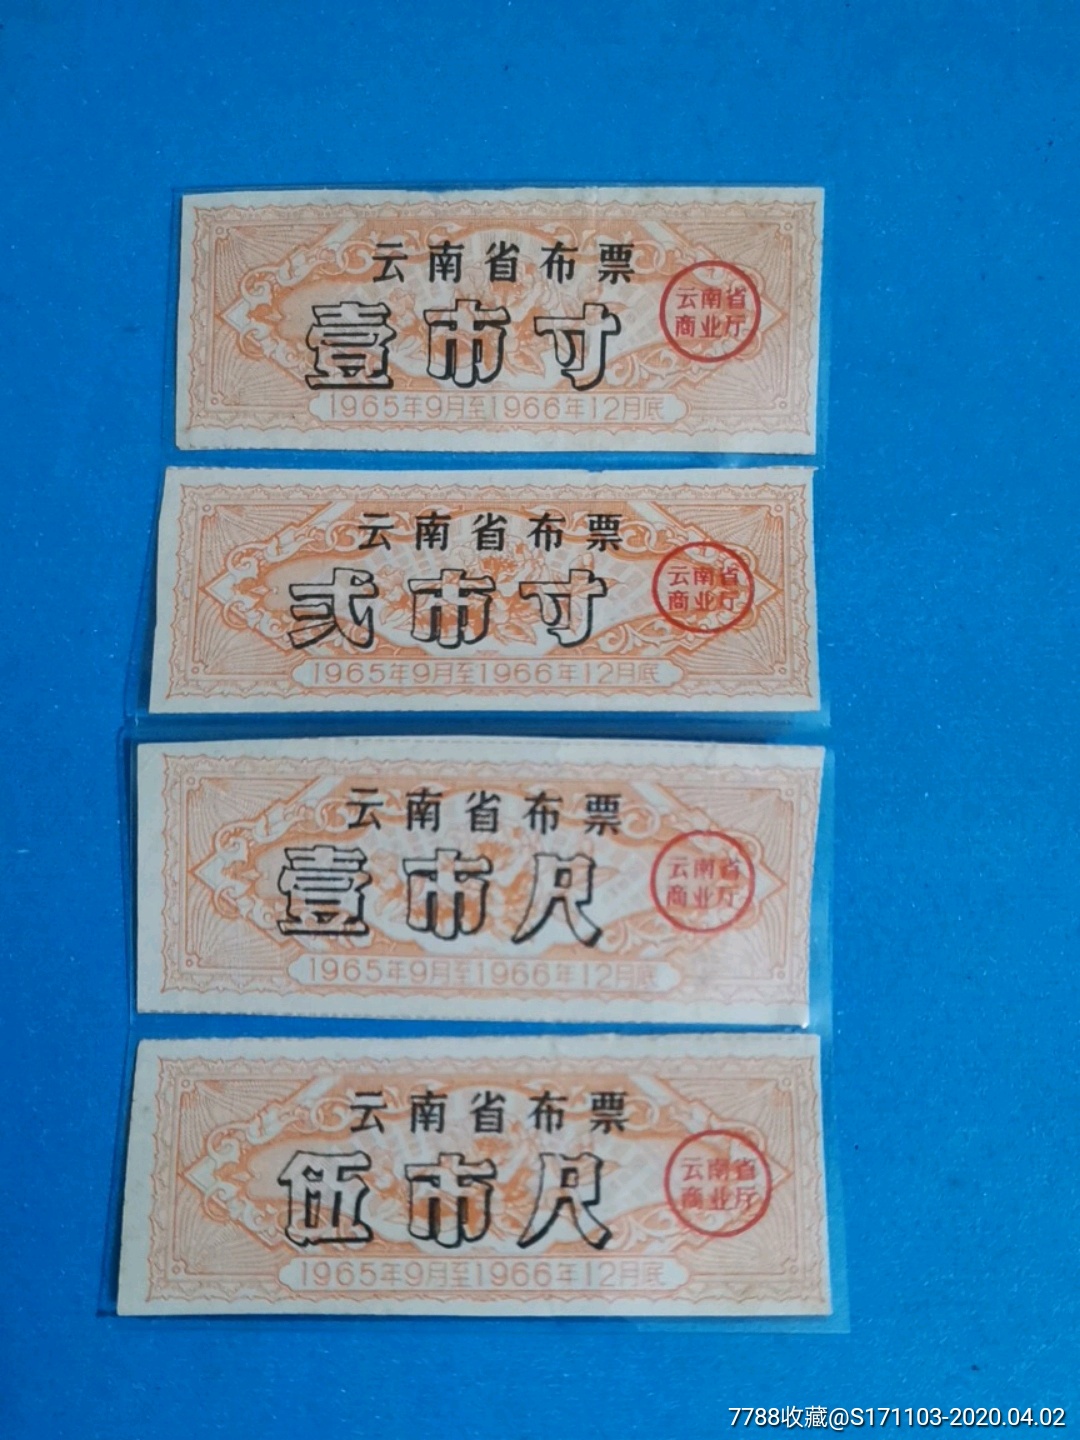 云南省布票1965.9-1966.12橙色四枚一套(无副券)